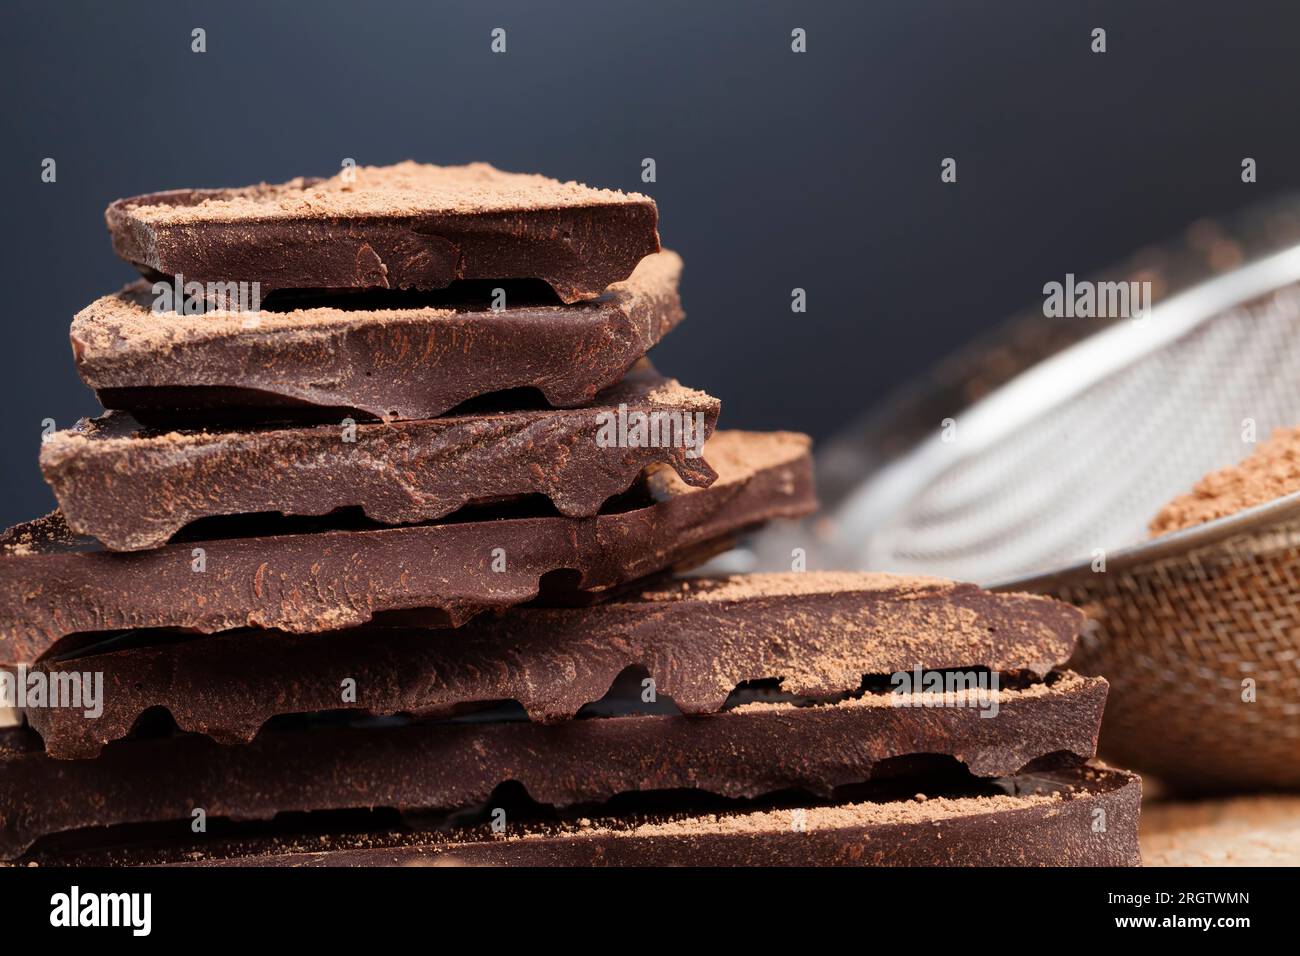 cioccolato amaro spezzato a pezzi, grandi pezzi di cioccolato amaro con cacao e burro, diviso in pezzi un pezzo di cioccolato di cacao Foto Stock